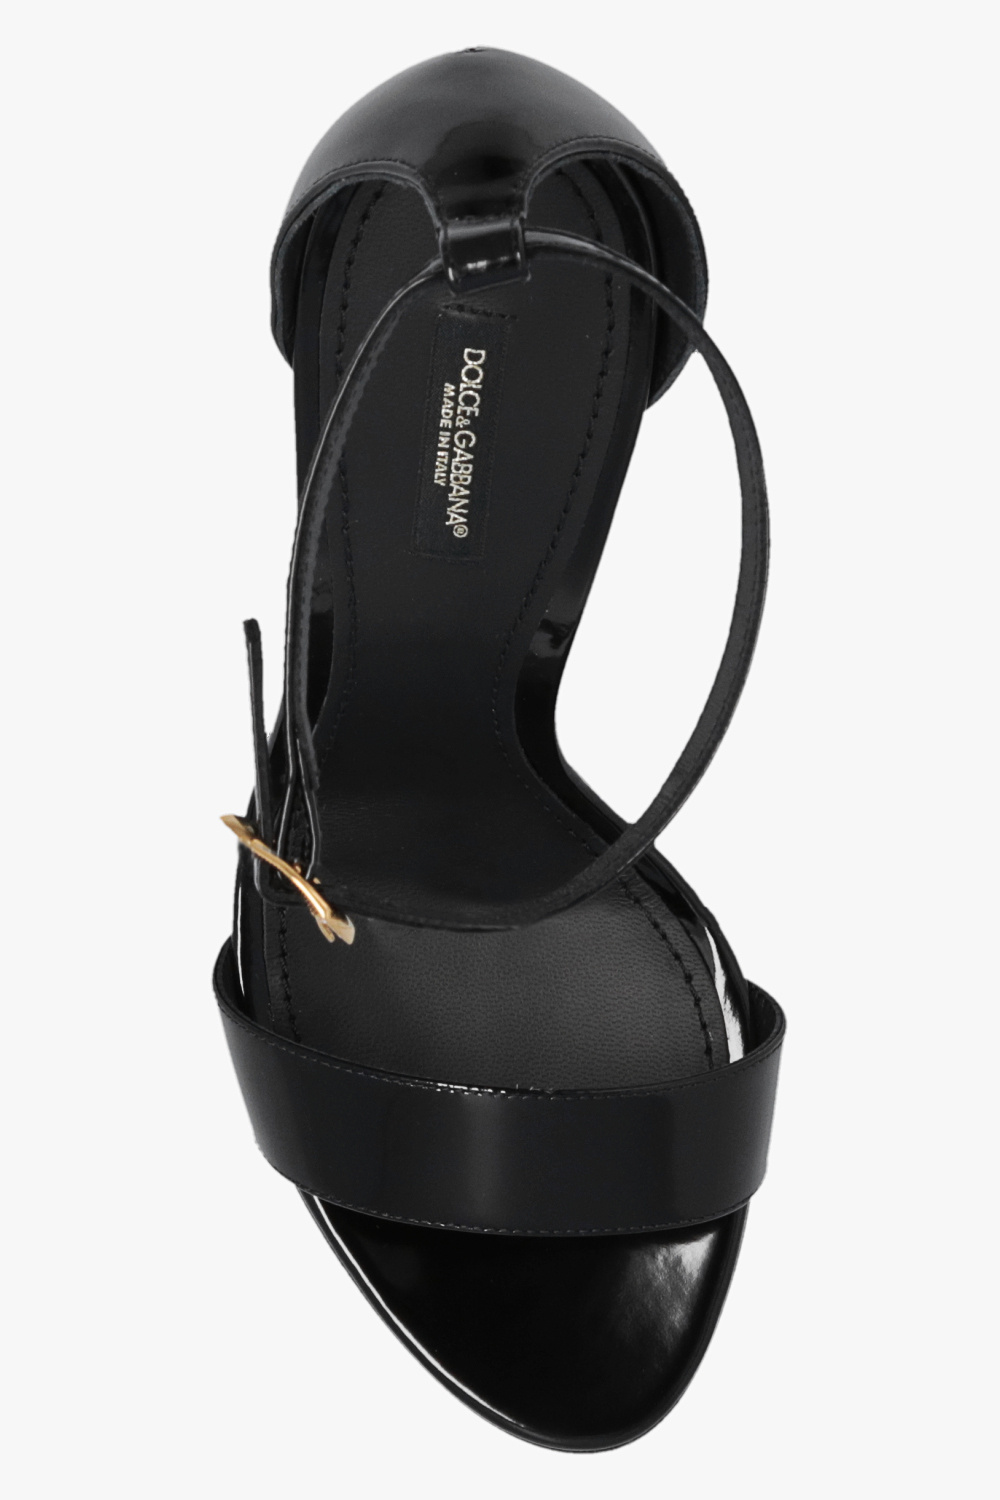 Dolce & Gabbana silk track shorts ‘Kiera’ mules